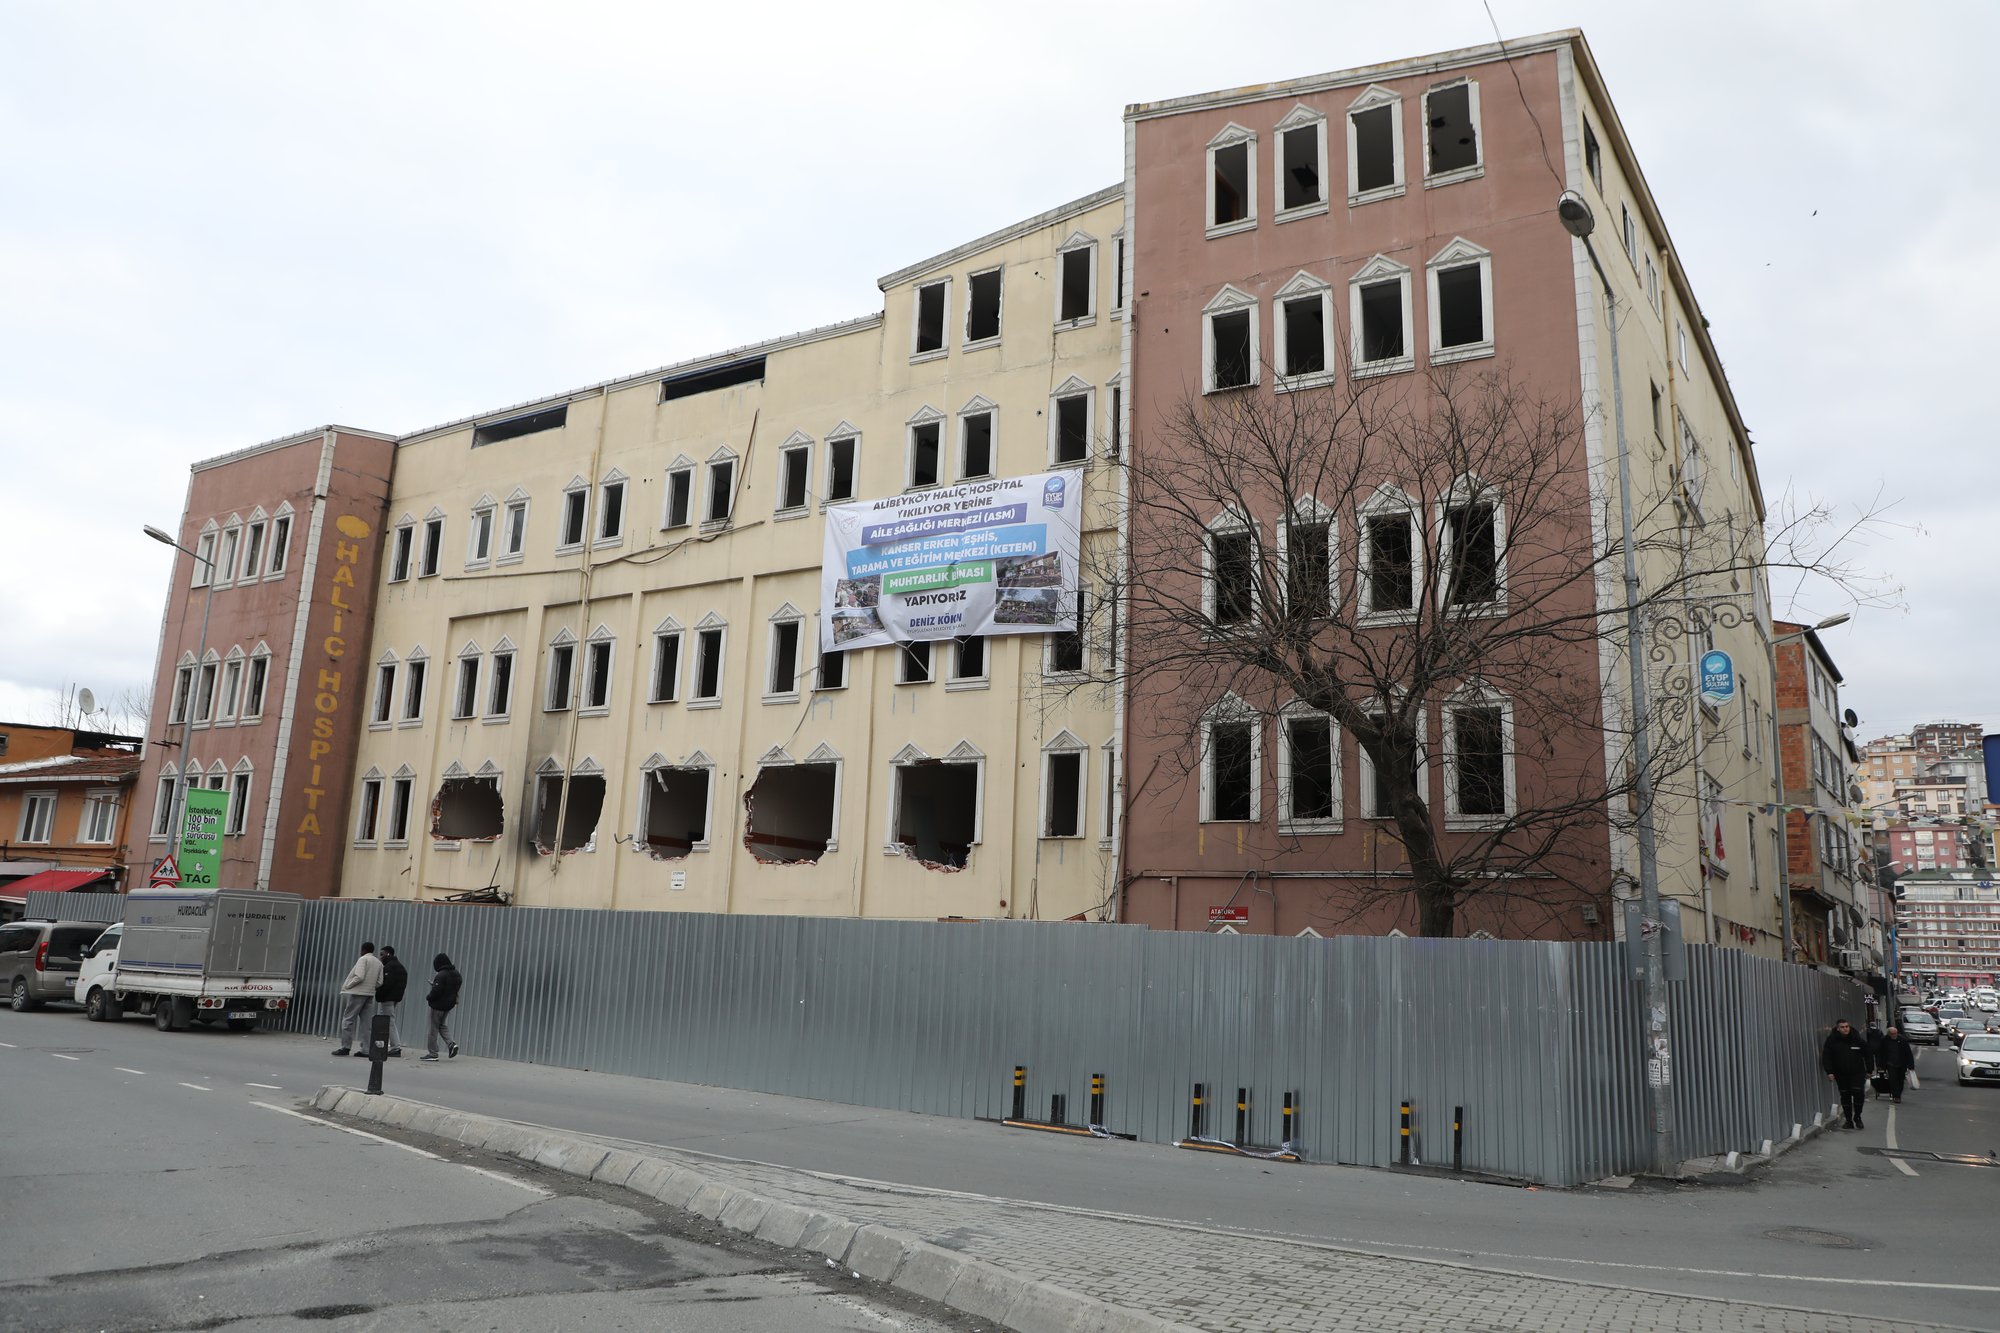 Alibeyköy Haliç Hospital binası yıkılıyor